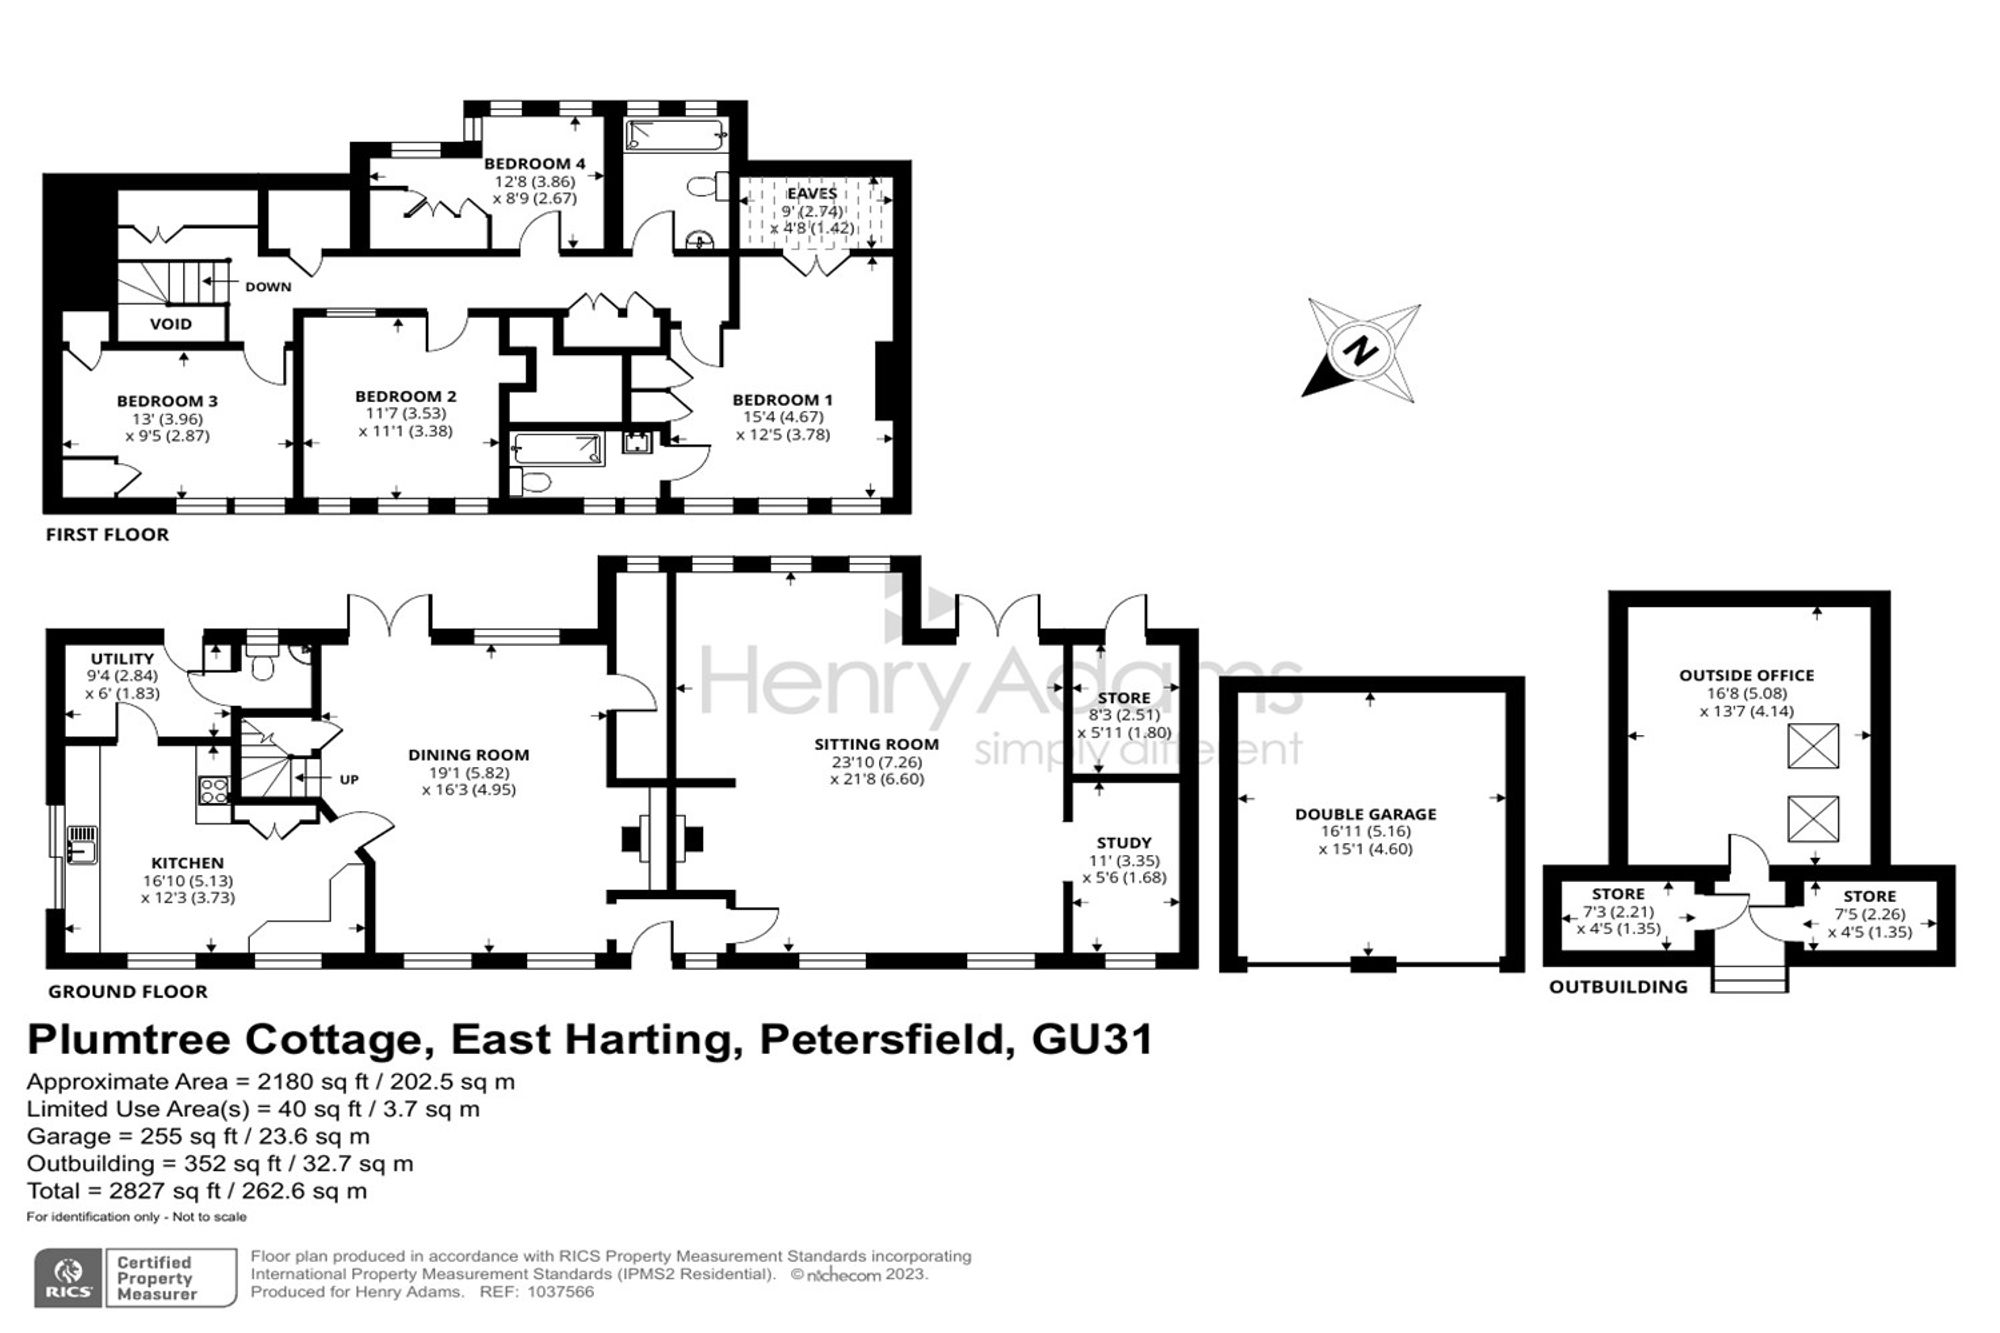 East Harting, Petersfield, GU31 floorplans